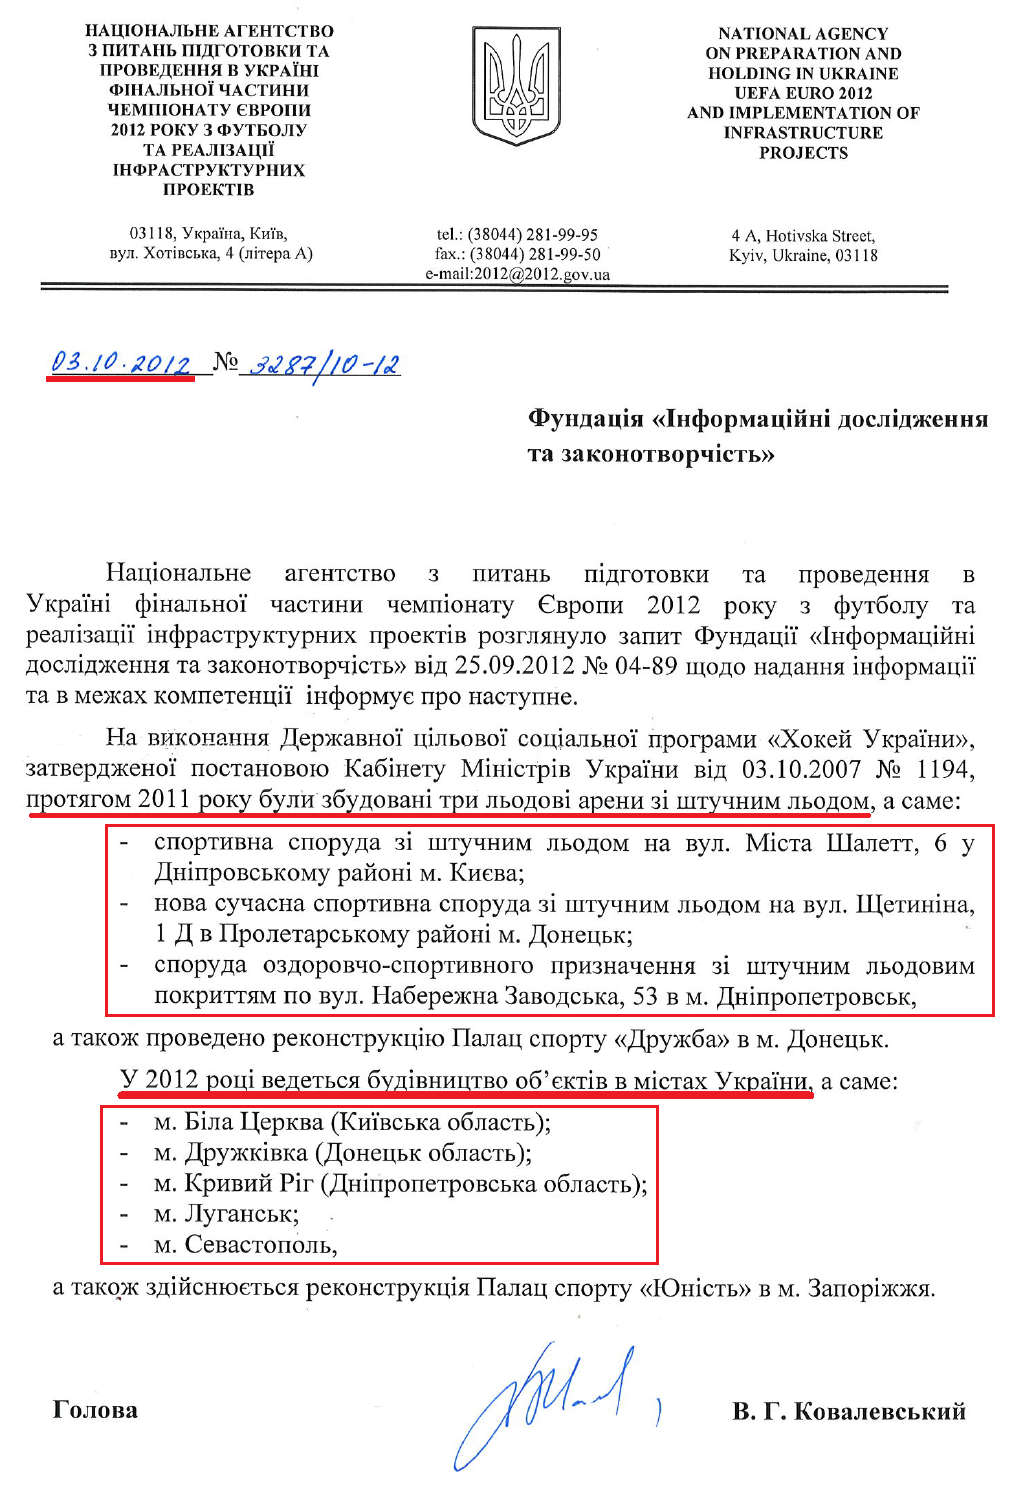 Лист Голови Укрєвроінфрапроекту В.Г.Ковалевського від 3 жовтня 2012 року